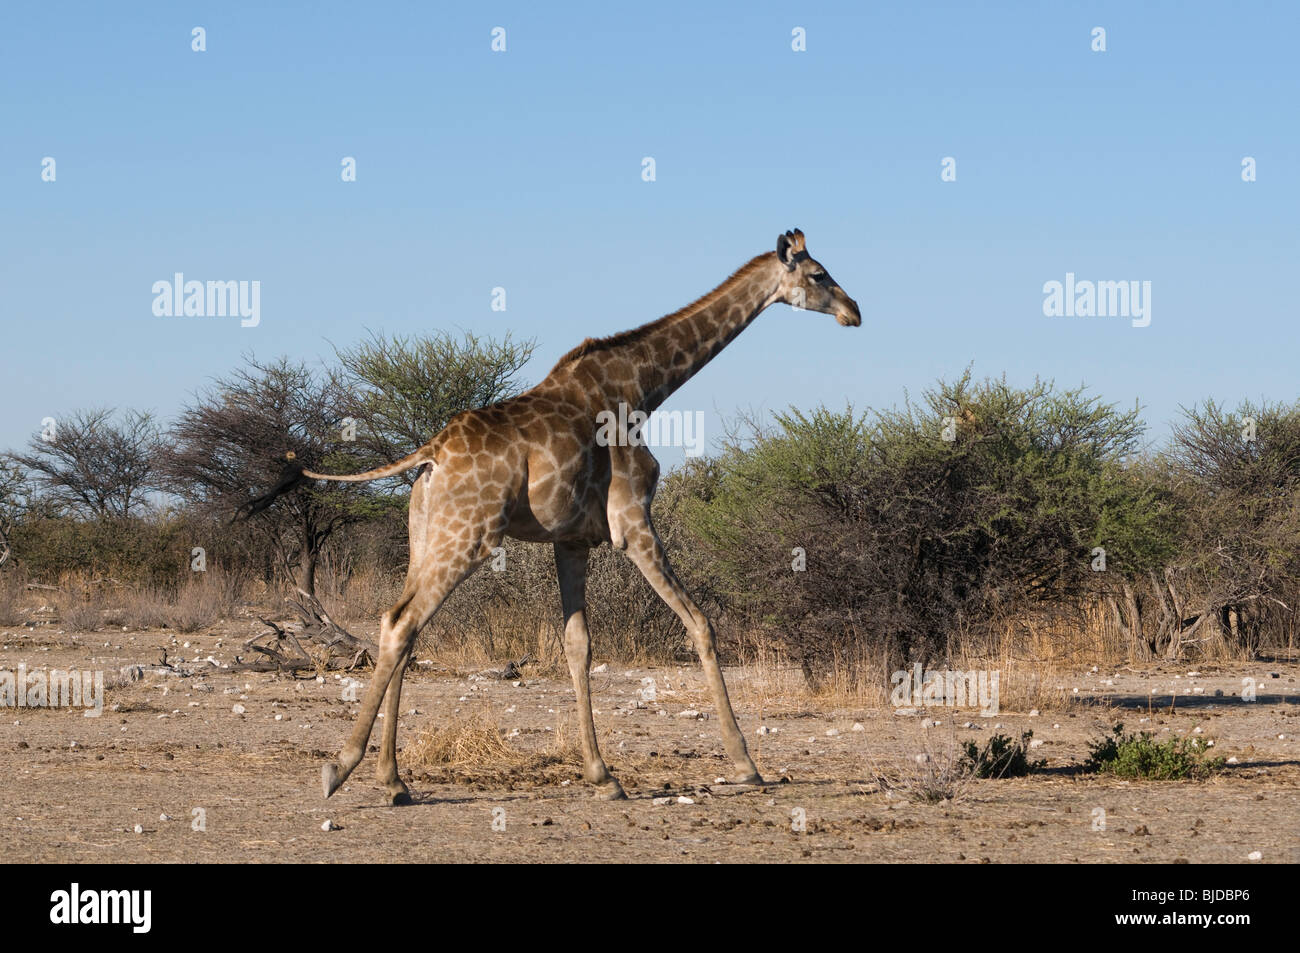 Giraffe running in Etosha National Park, Namibia Stock Photo